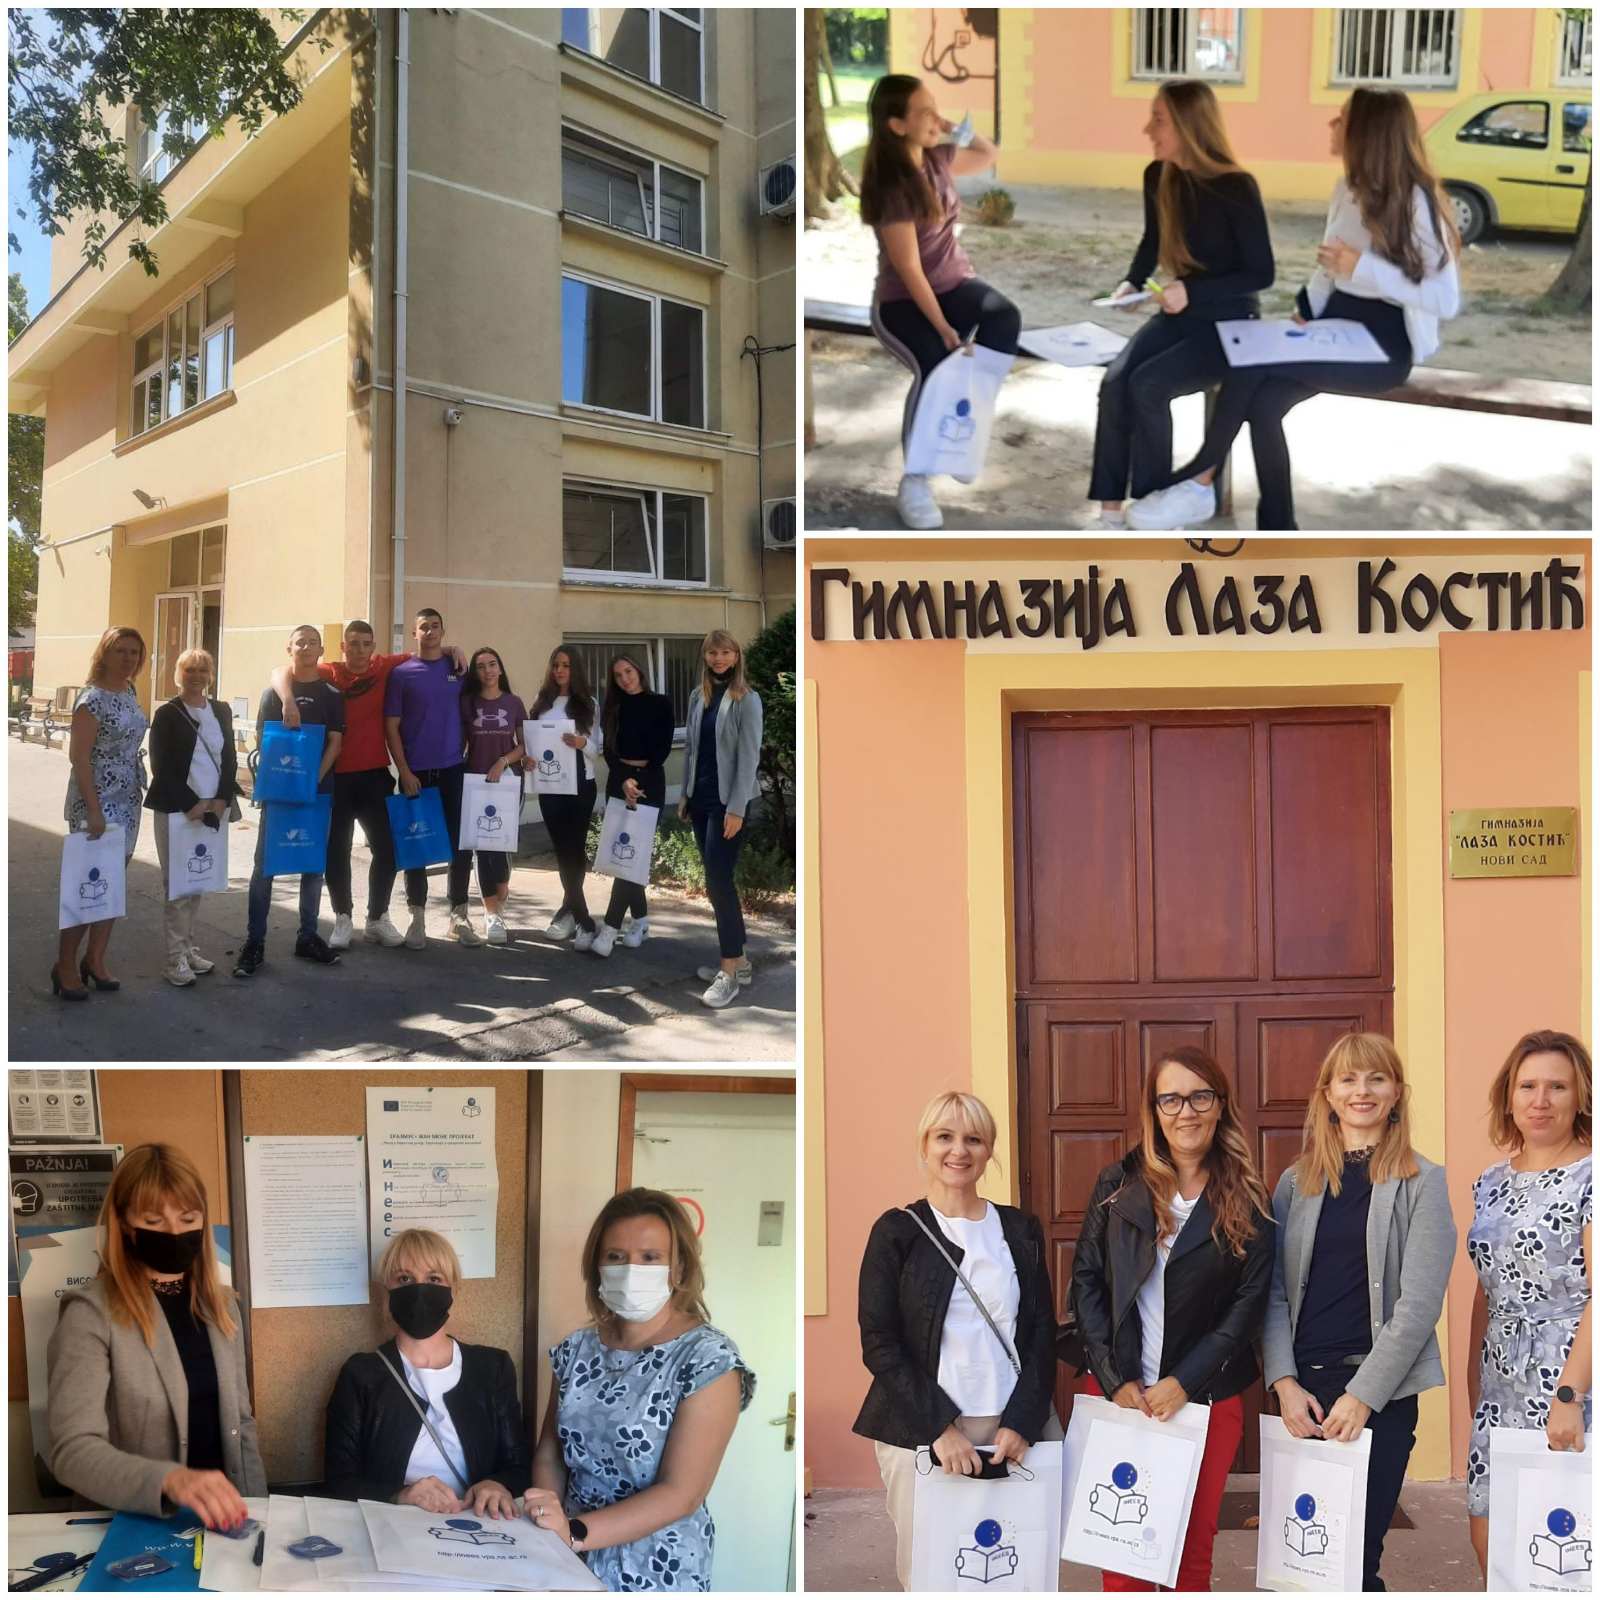 Promocija Žan Mone projekta i EU Info dani u gimnaziji “Laza Kostić”